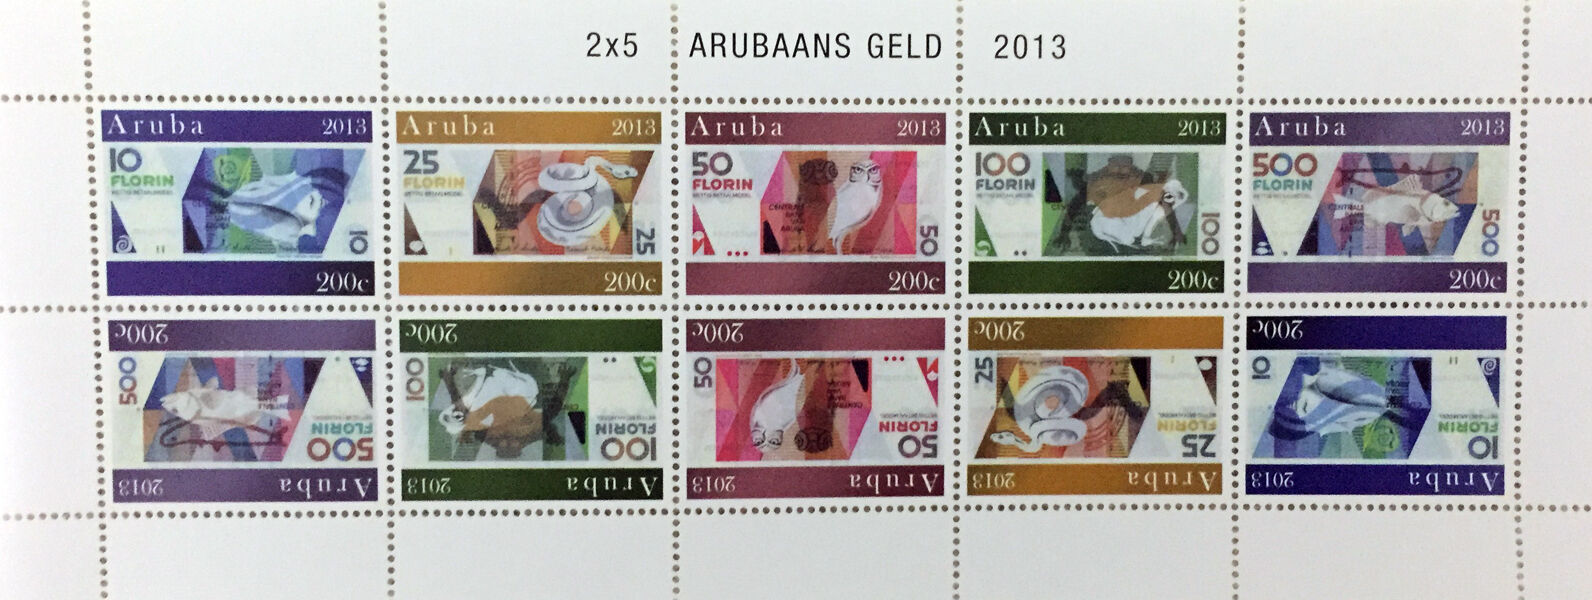 Aruba: 2013 Paper Money - Arubaans Geld 10 Post Stamp - Full Sheet